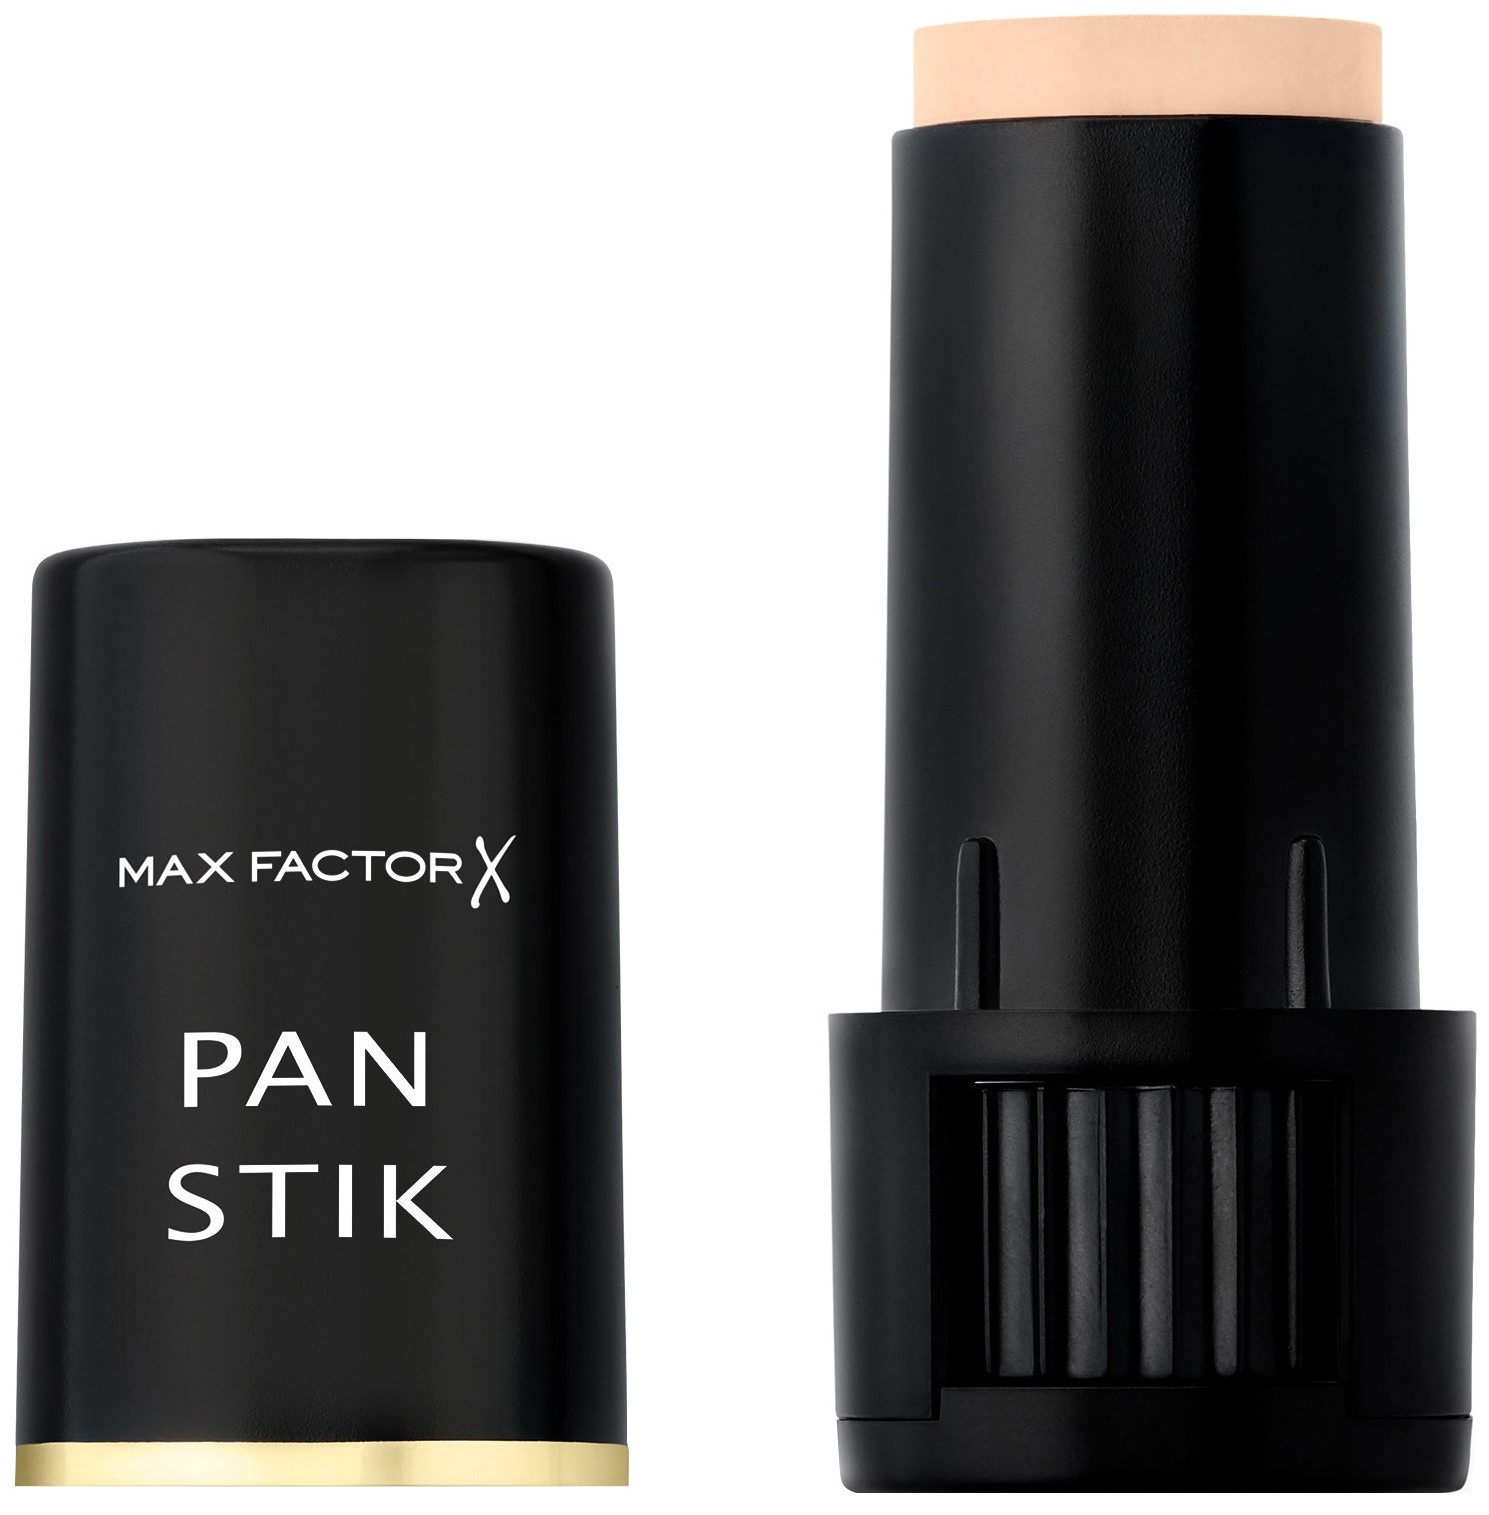 Стики фактор. Тональный крем Max Factor Panstik. Pan Stik от Max Factor 12. Макс фактор тональный карандаш Пан стик. Тональный карандаш Макс фактор Pan Stik.